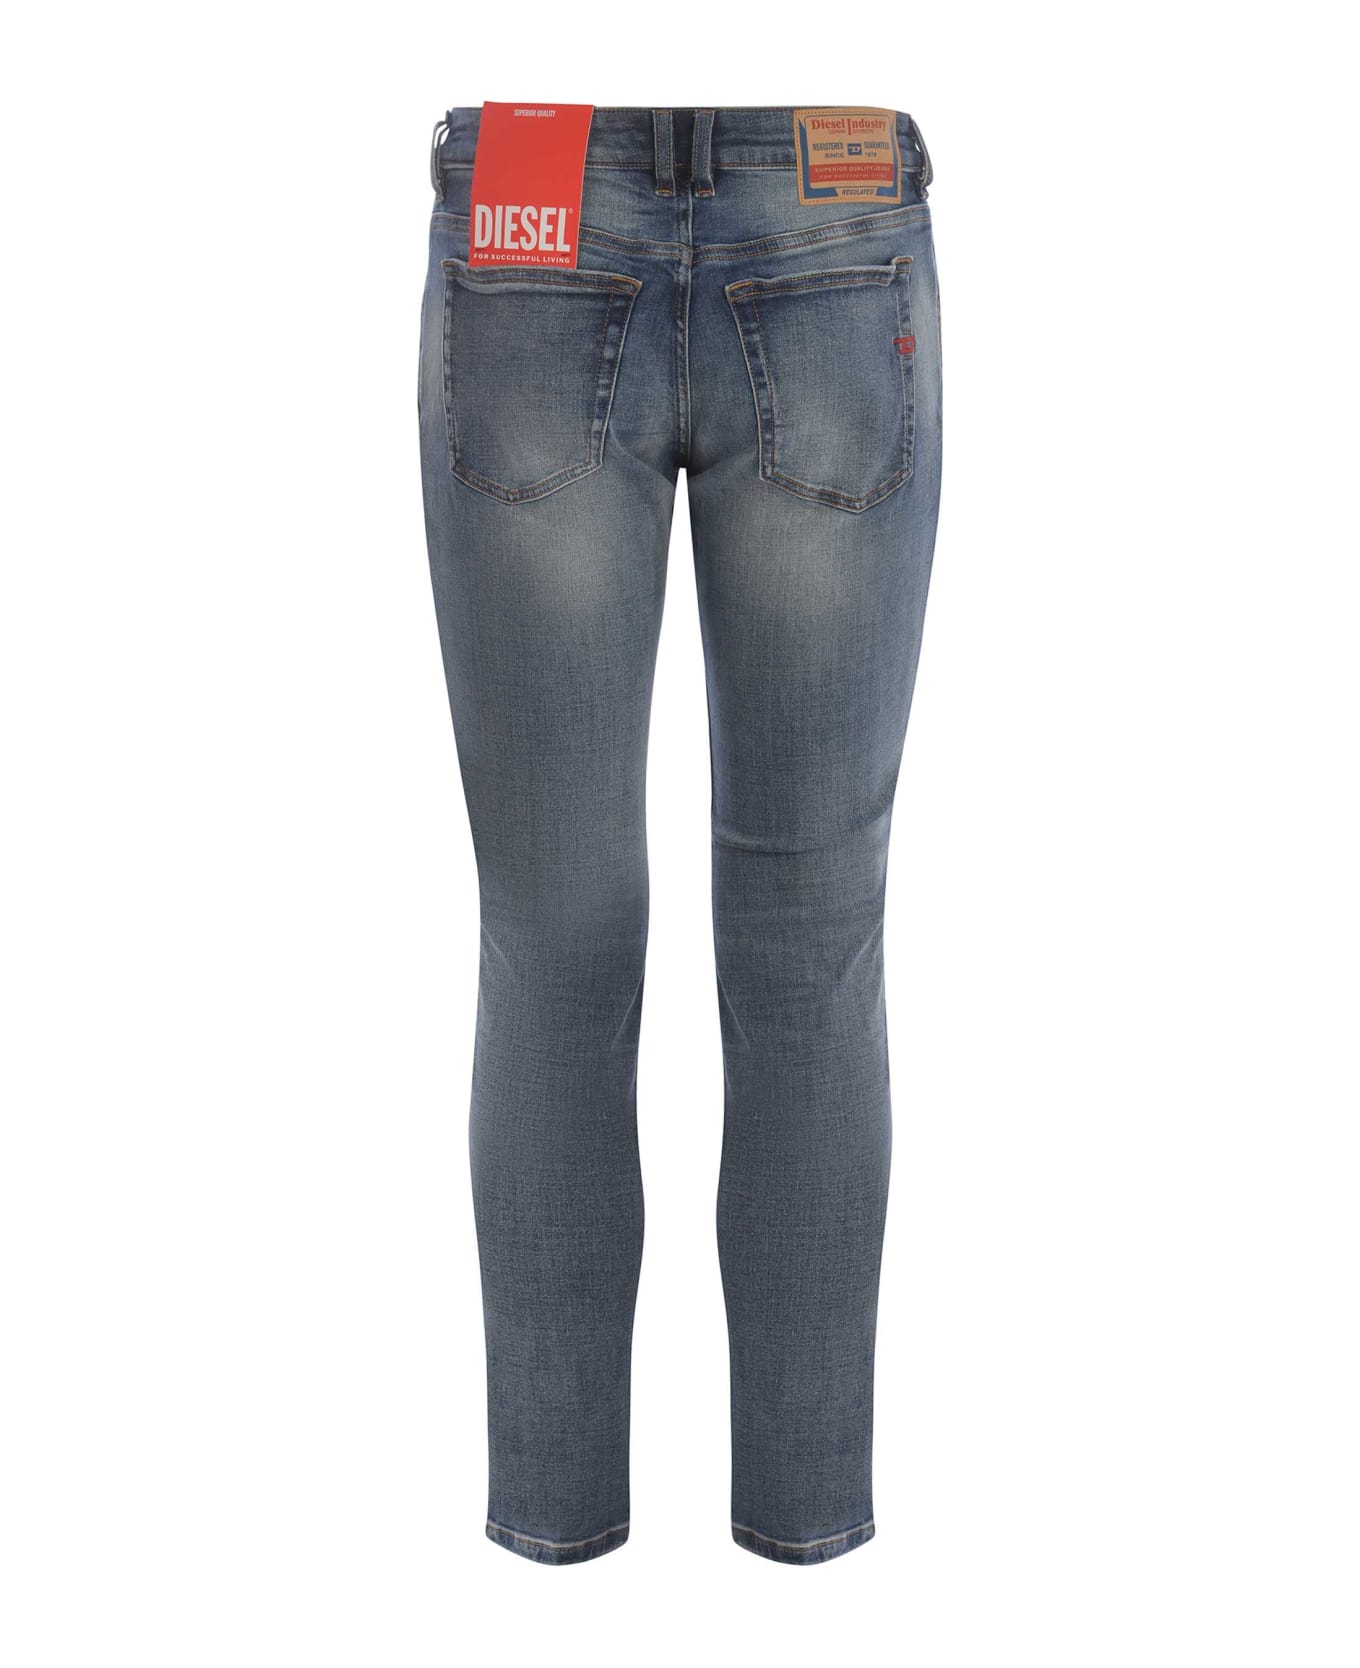 Diesel Jeans Diesel "sleenker" Made Of Denim - Blu chiaro デニム